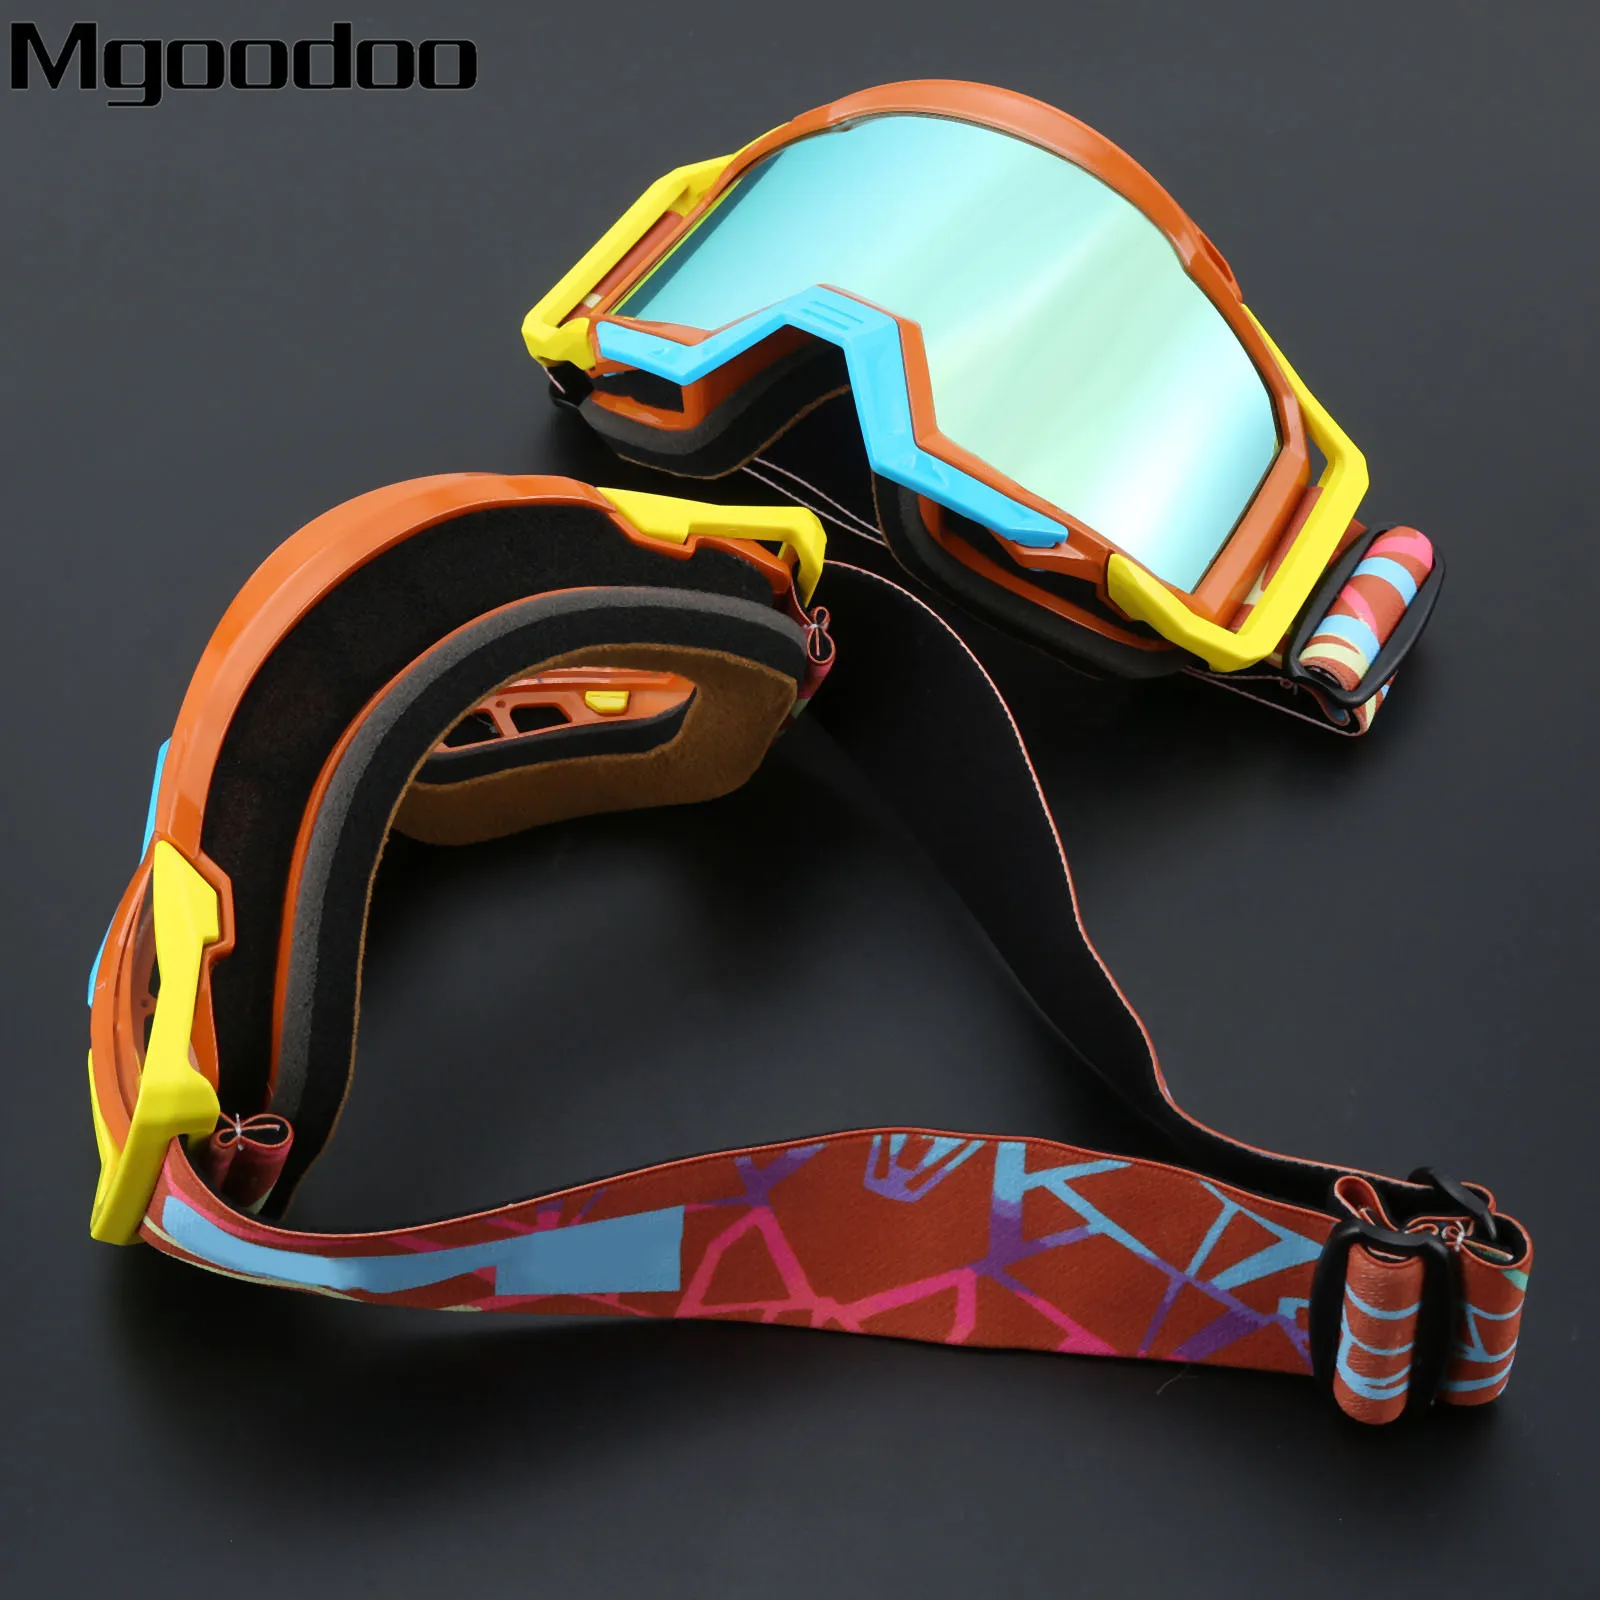 Mgoodoo мотокросса, очки для мотокросса, спортивные, мотокросса, внедорожные, грязеотталкивающие, гоночные очки, анти-ветрозащитные очки, очки